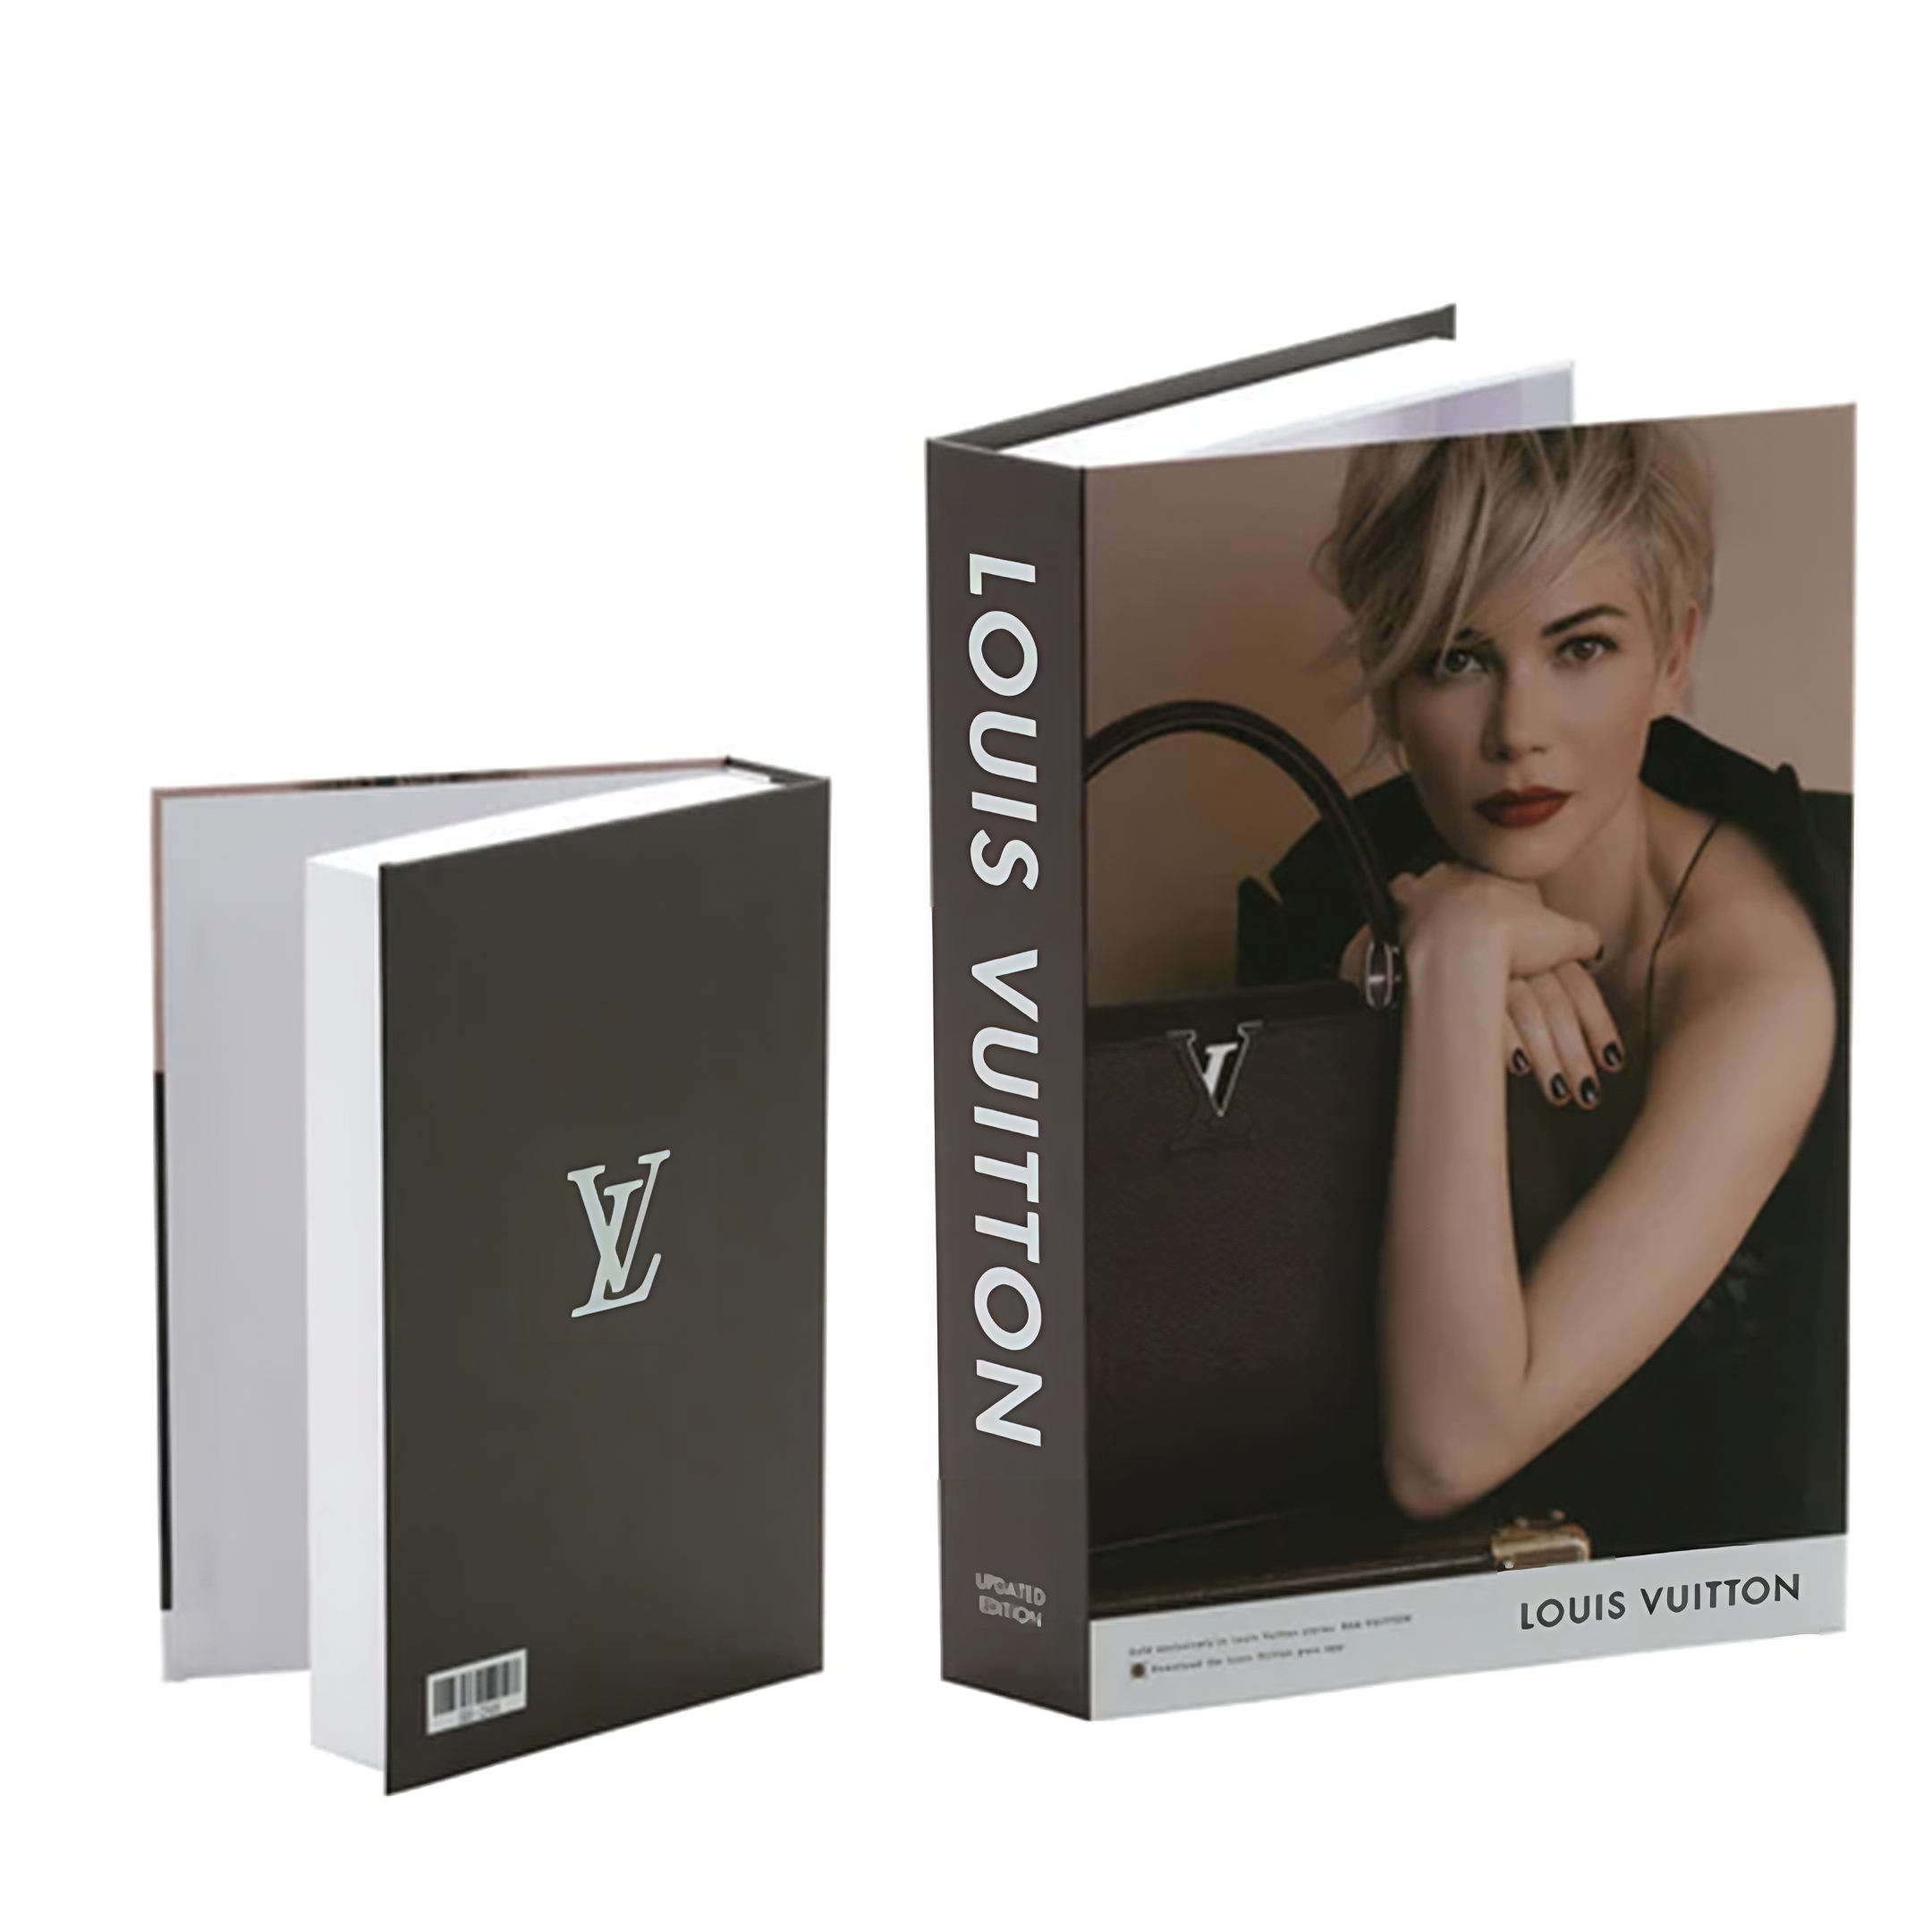 Designer Storage Book - LV Modern Luxury  Fashion books, Chanel book  decor, Modern decor